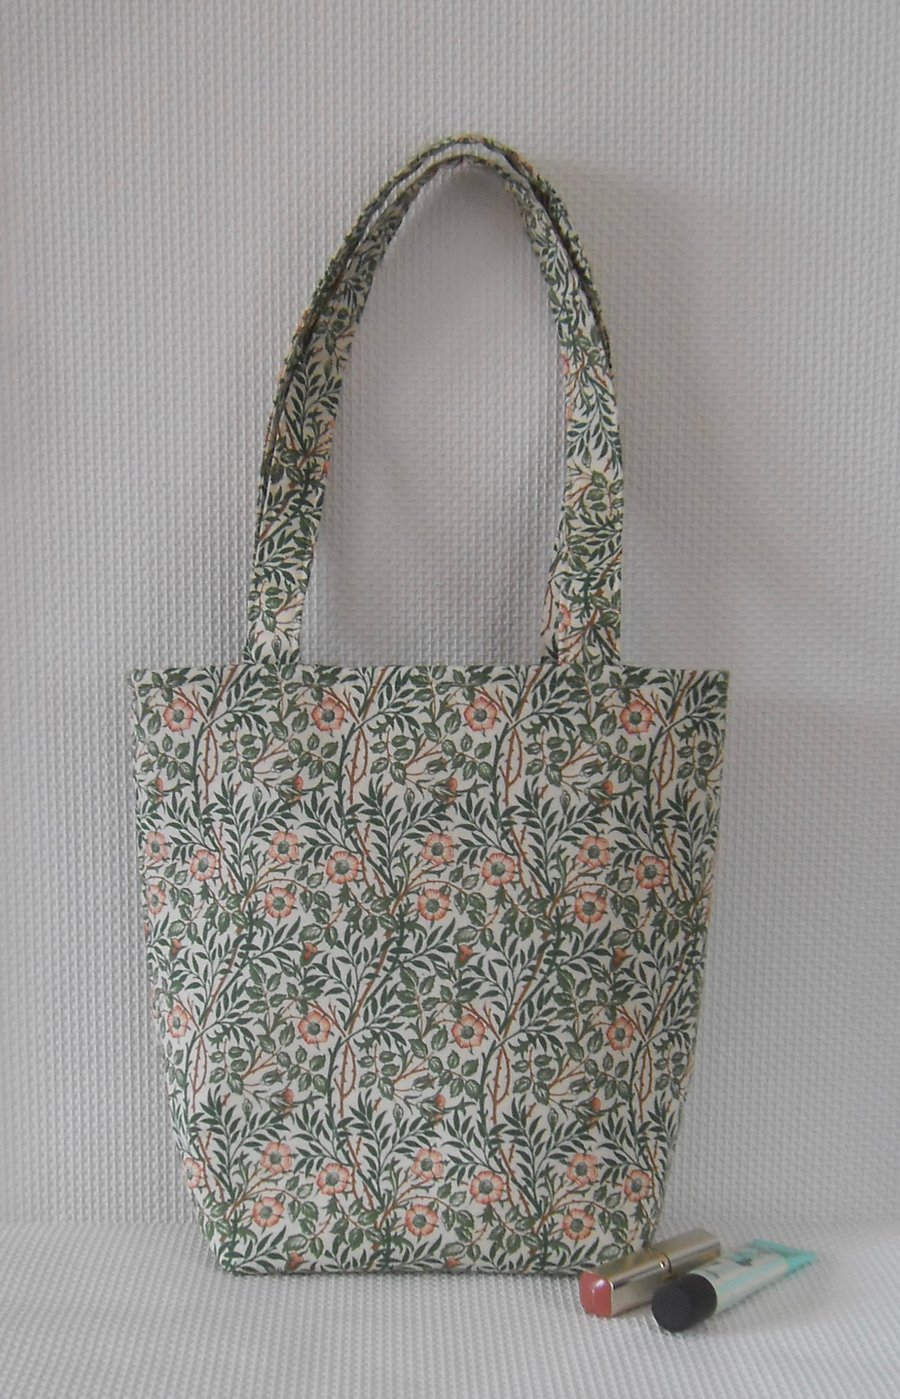 Tote bag long handles in William Morris Sweet Briar fabric